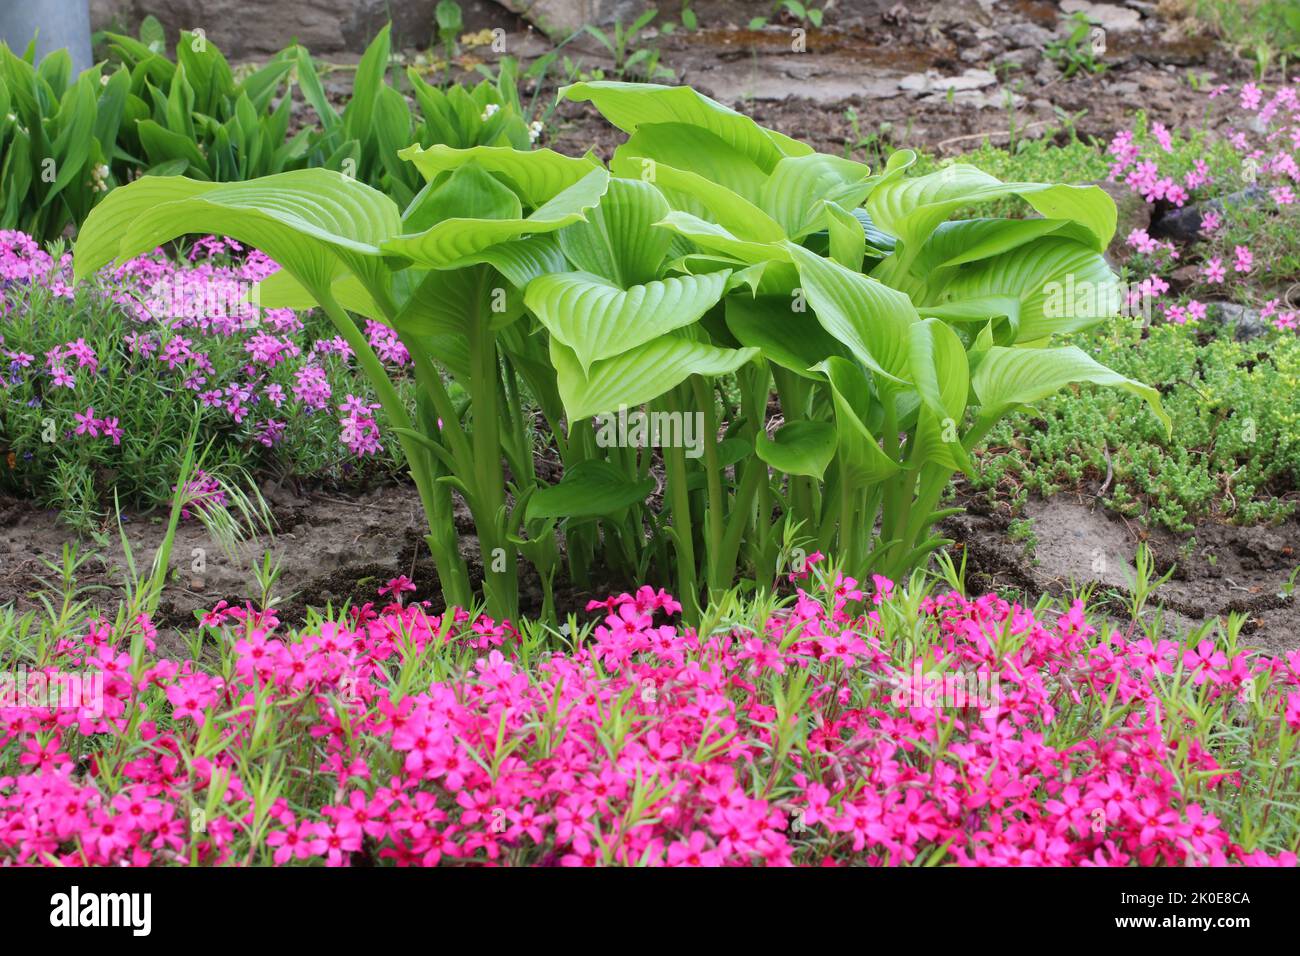 Hosta fortunei Hyacinthina variegata cresce in un letto di fiori nel mese di maggio. Architettura paesaggistica. Foto Stock